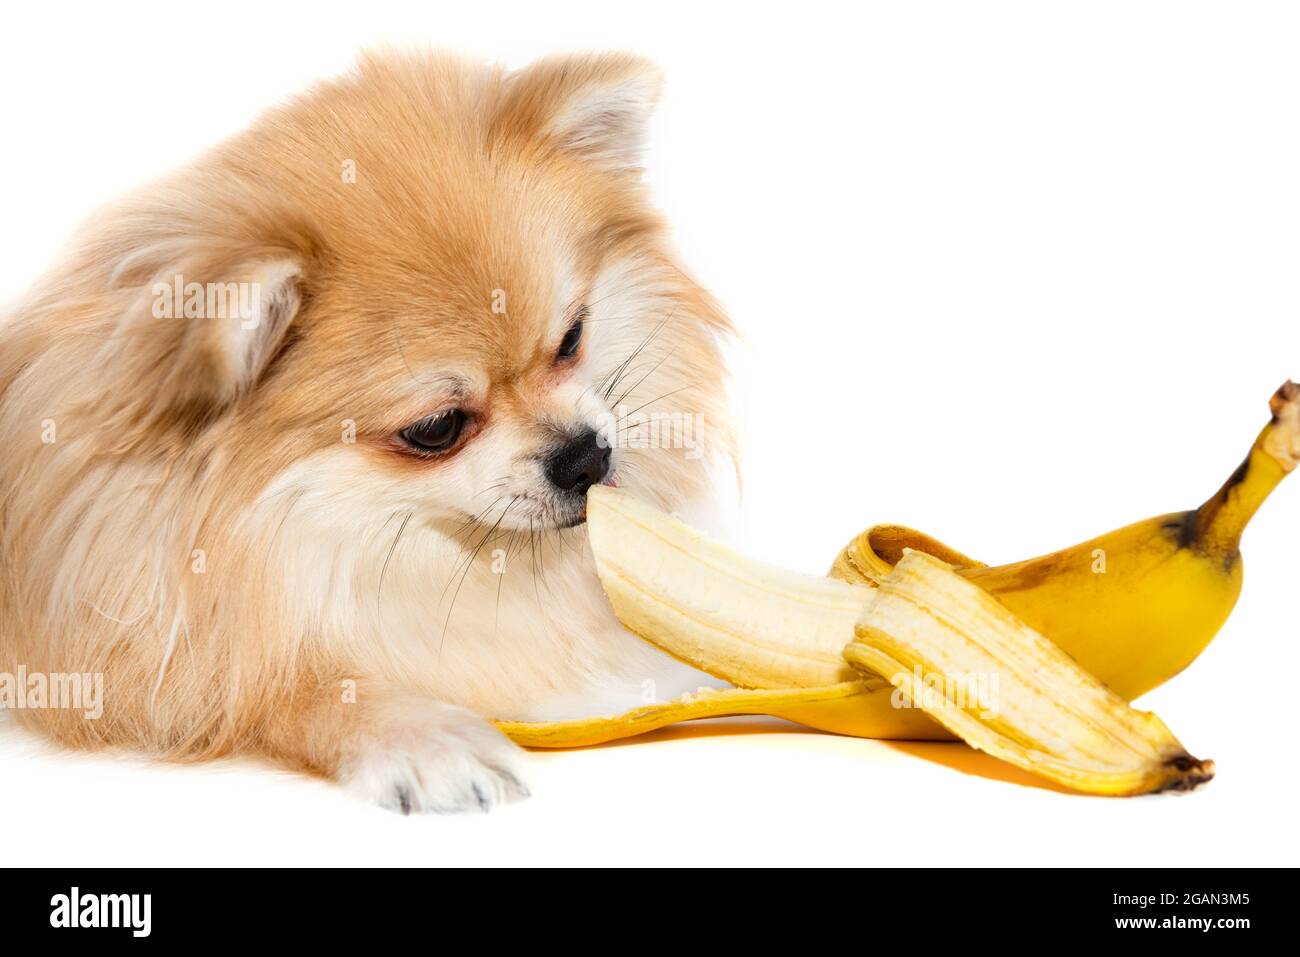 Modsatte hvordan man bruger Tegn et billede Pommern isst eine Banane. Hund essen Obst auf weißem Hintergrund.  Pommersche Elite isoliert. Essen Stockfotografie - Alamy